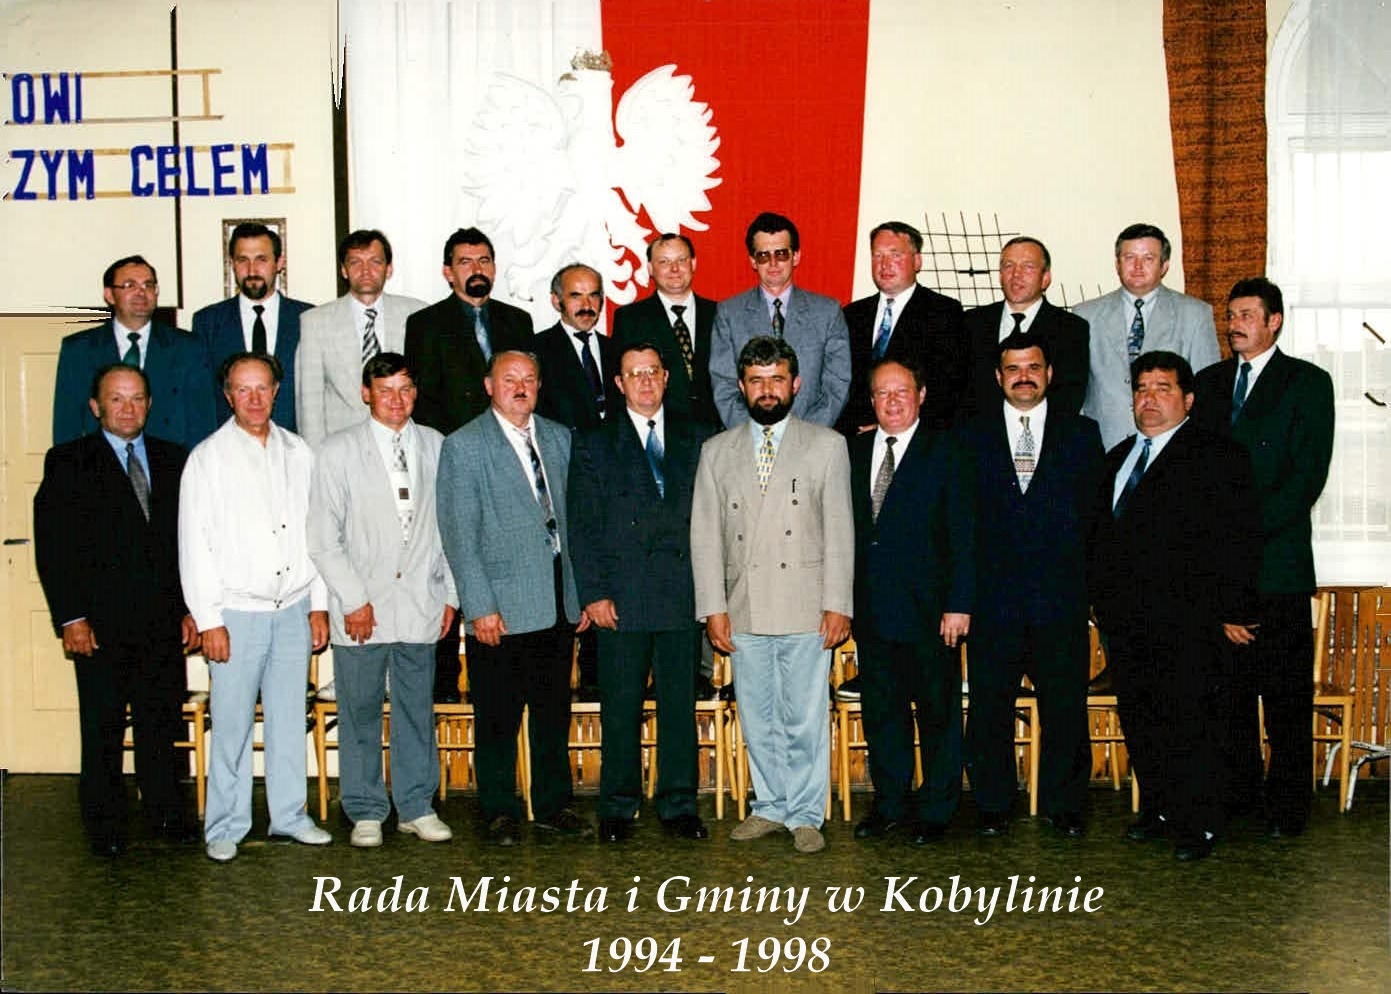 Rada Miasta i Gminy 1994 - 1998